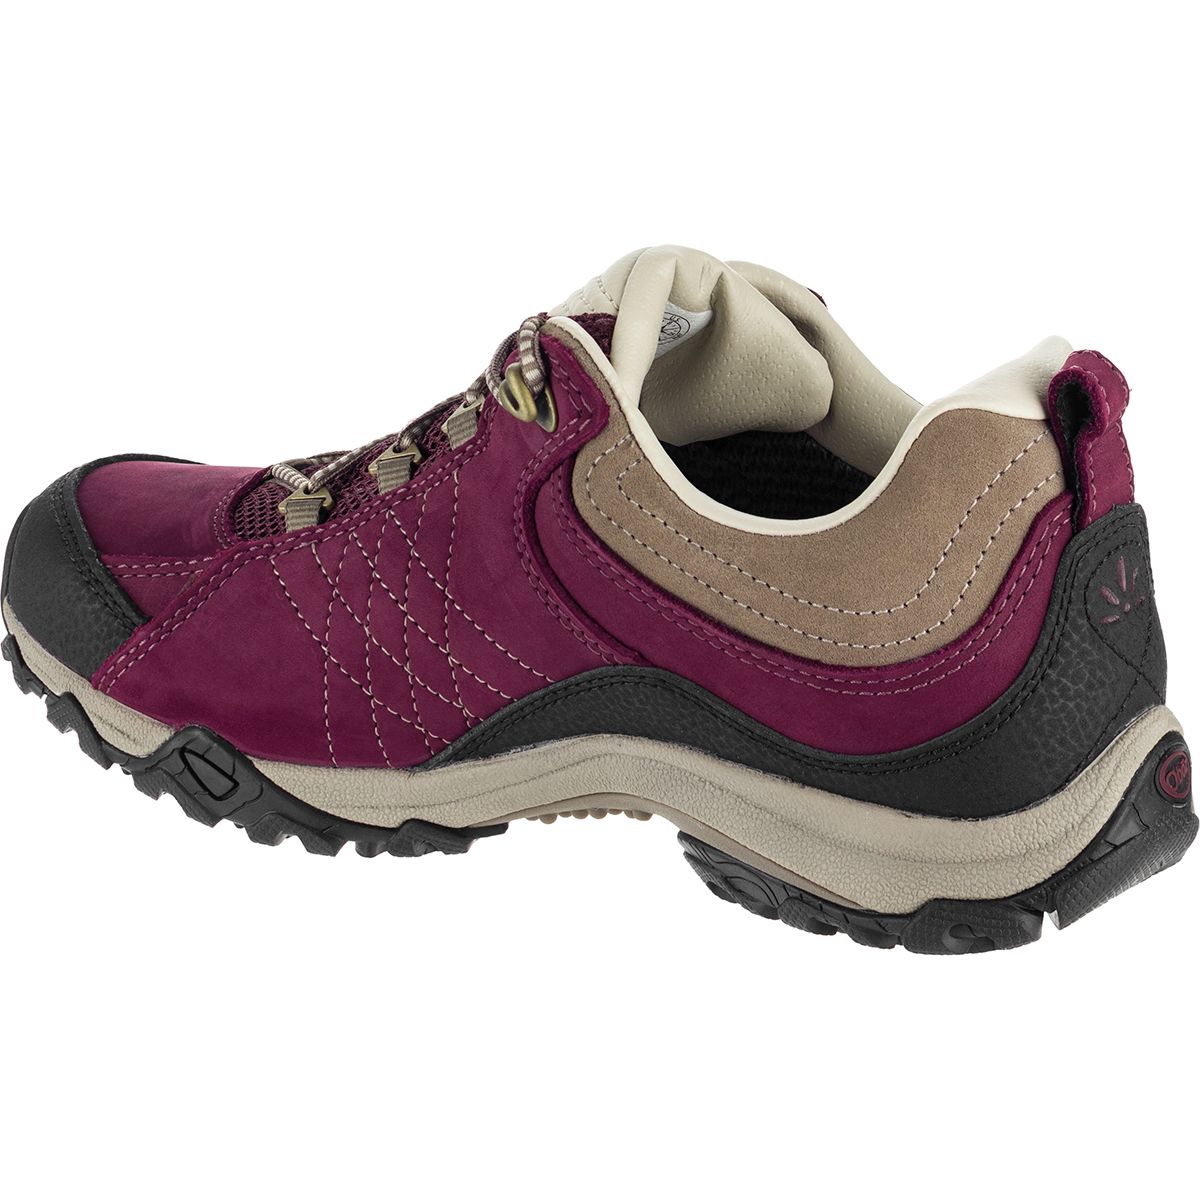 Oboz Sapphire Low B-Dry Hiking Shoe - Women's - Footwear